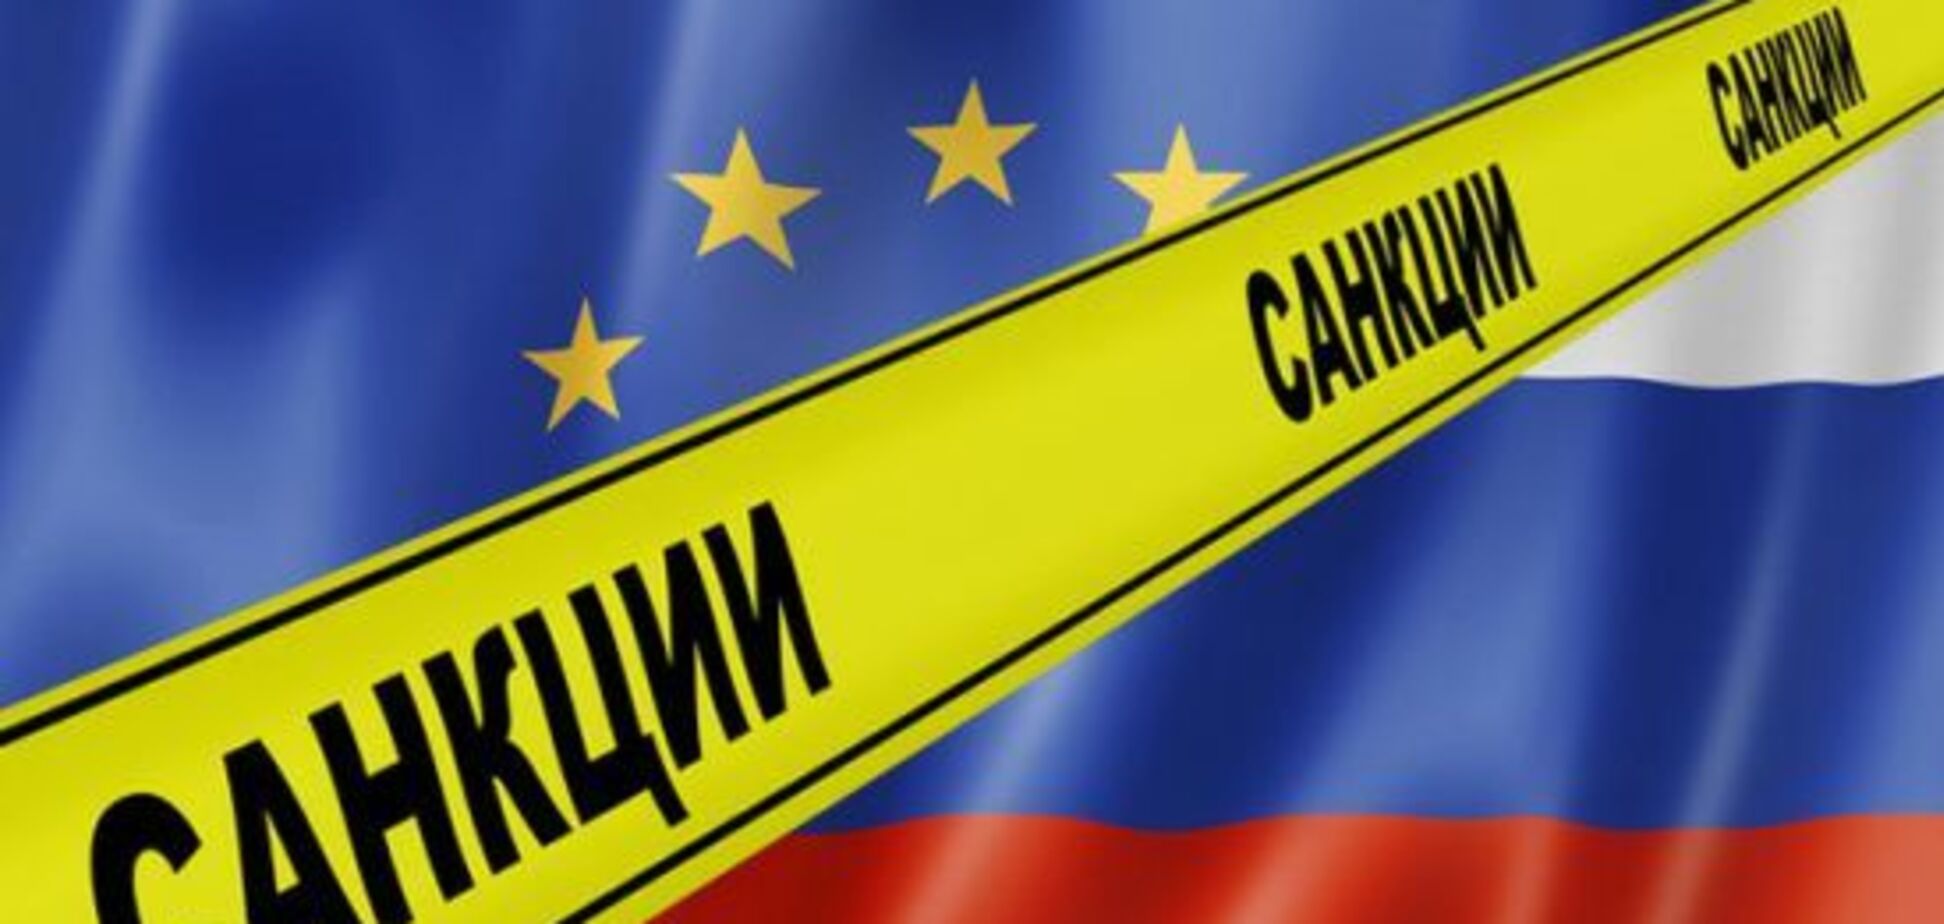 Снятие санкций: названы страны Евросоюза, которые поддержат Путина